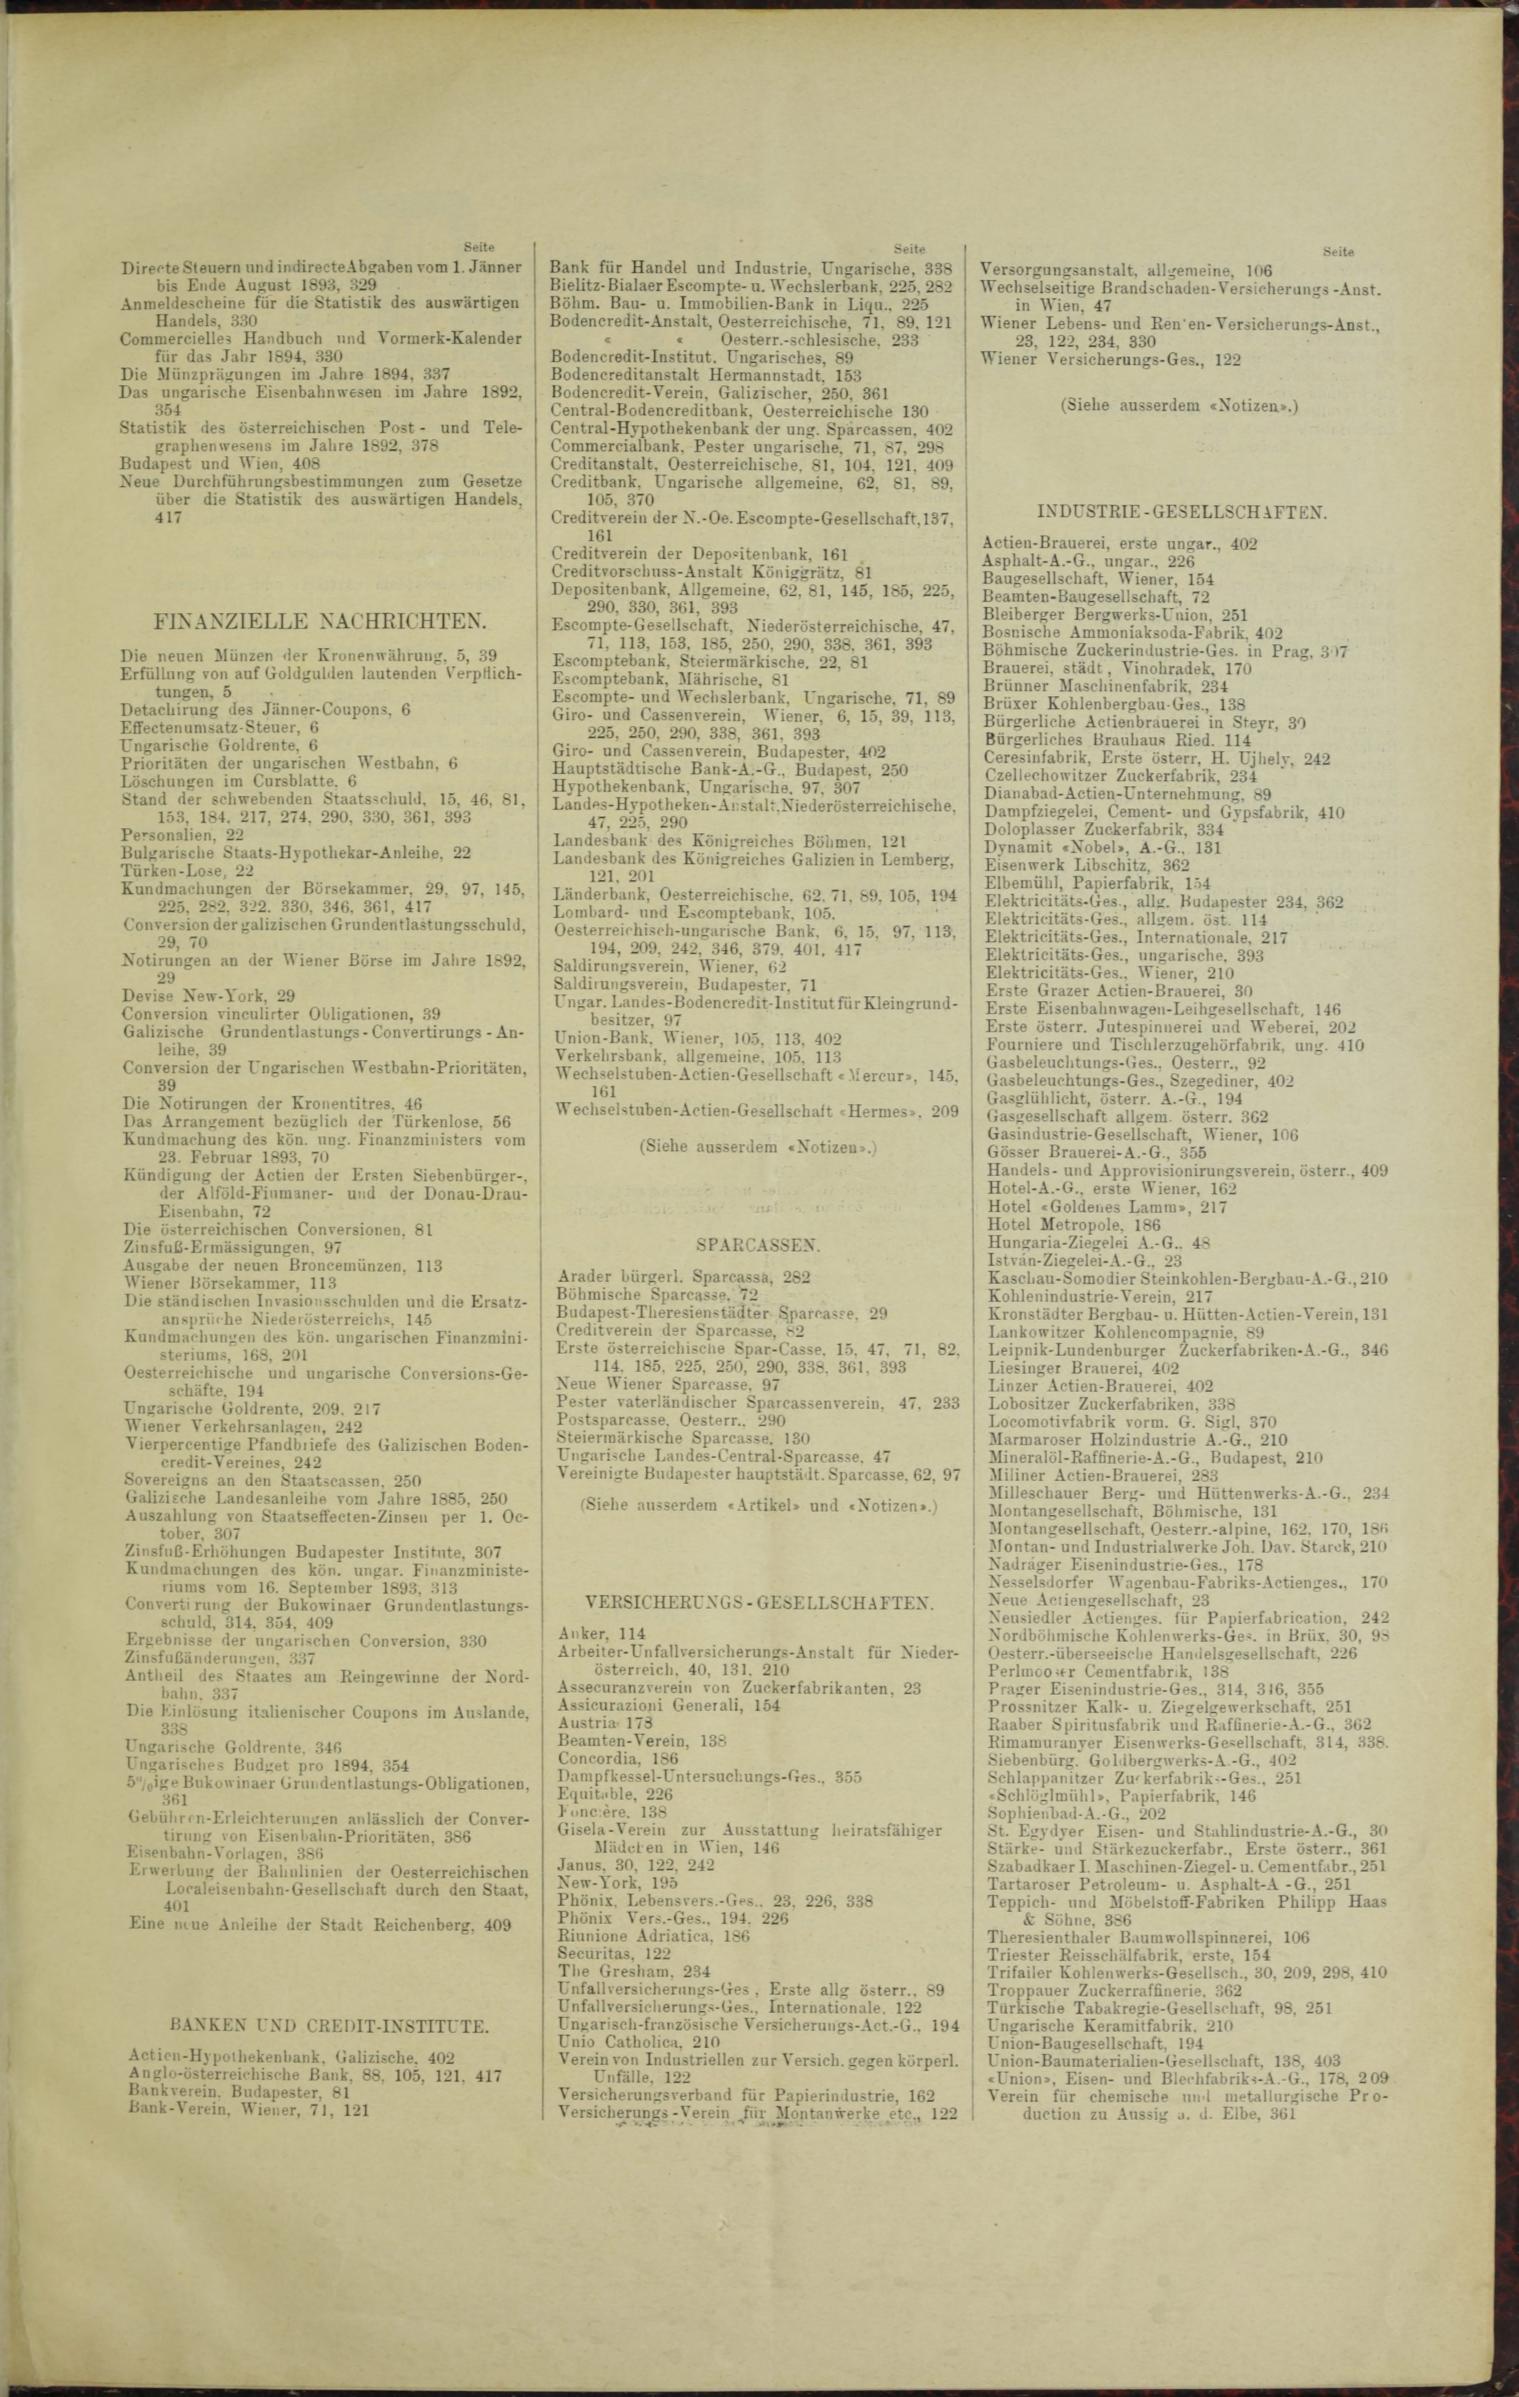 Der Tresor 23.03.1893 - Seite 11